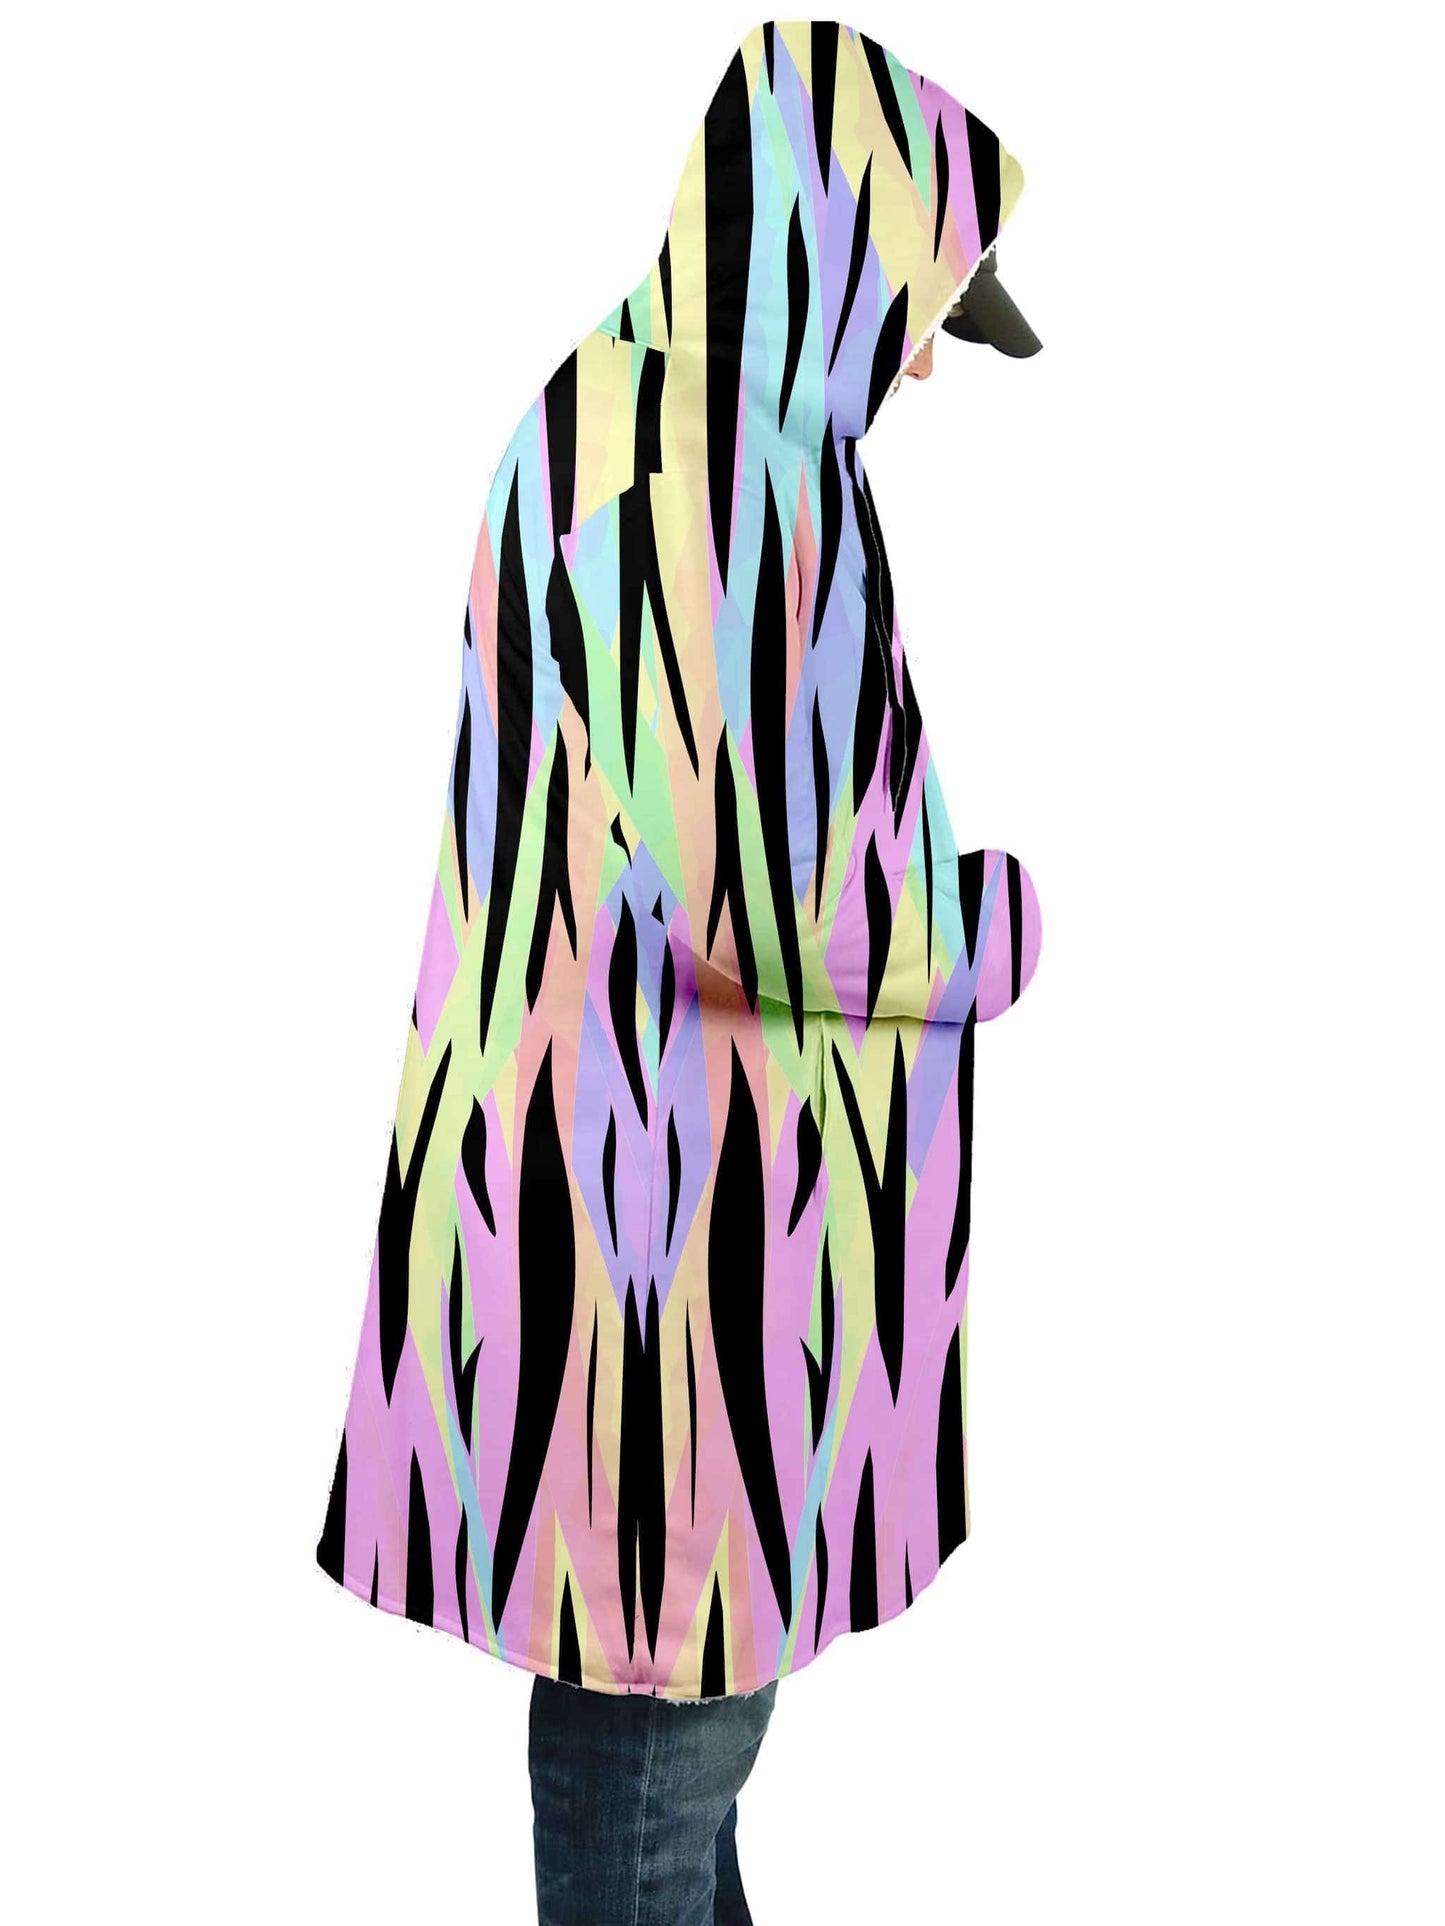 Psychedelic Tiger Stripes Cloak, Sartoris Art, | iEDM